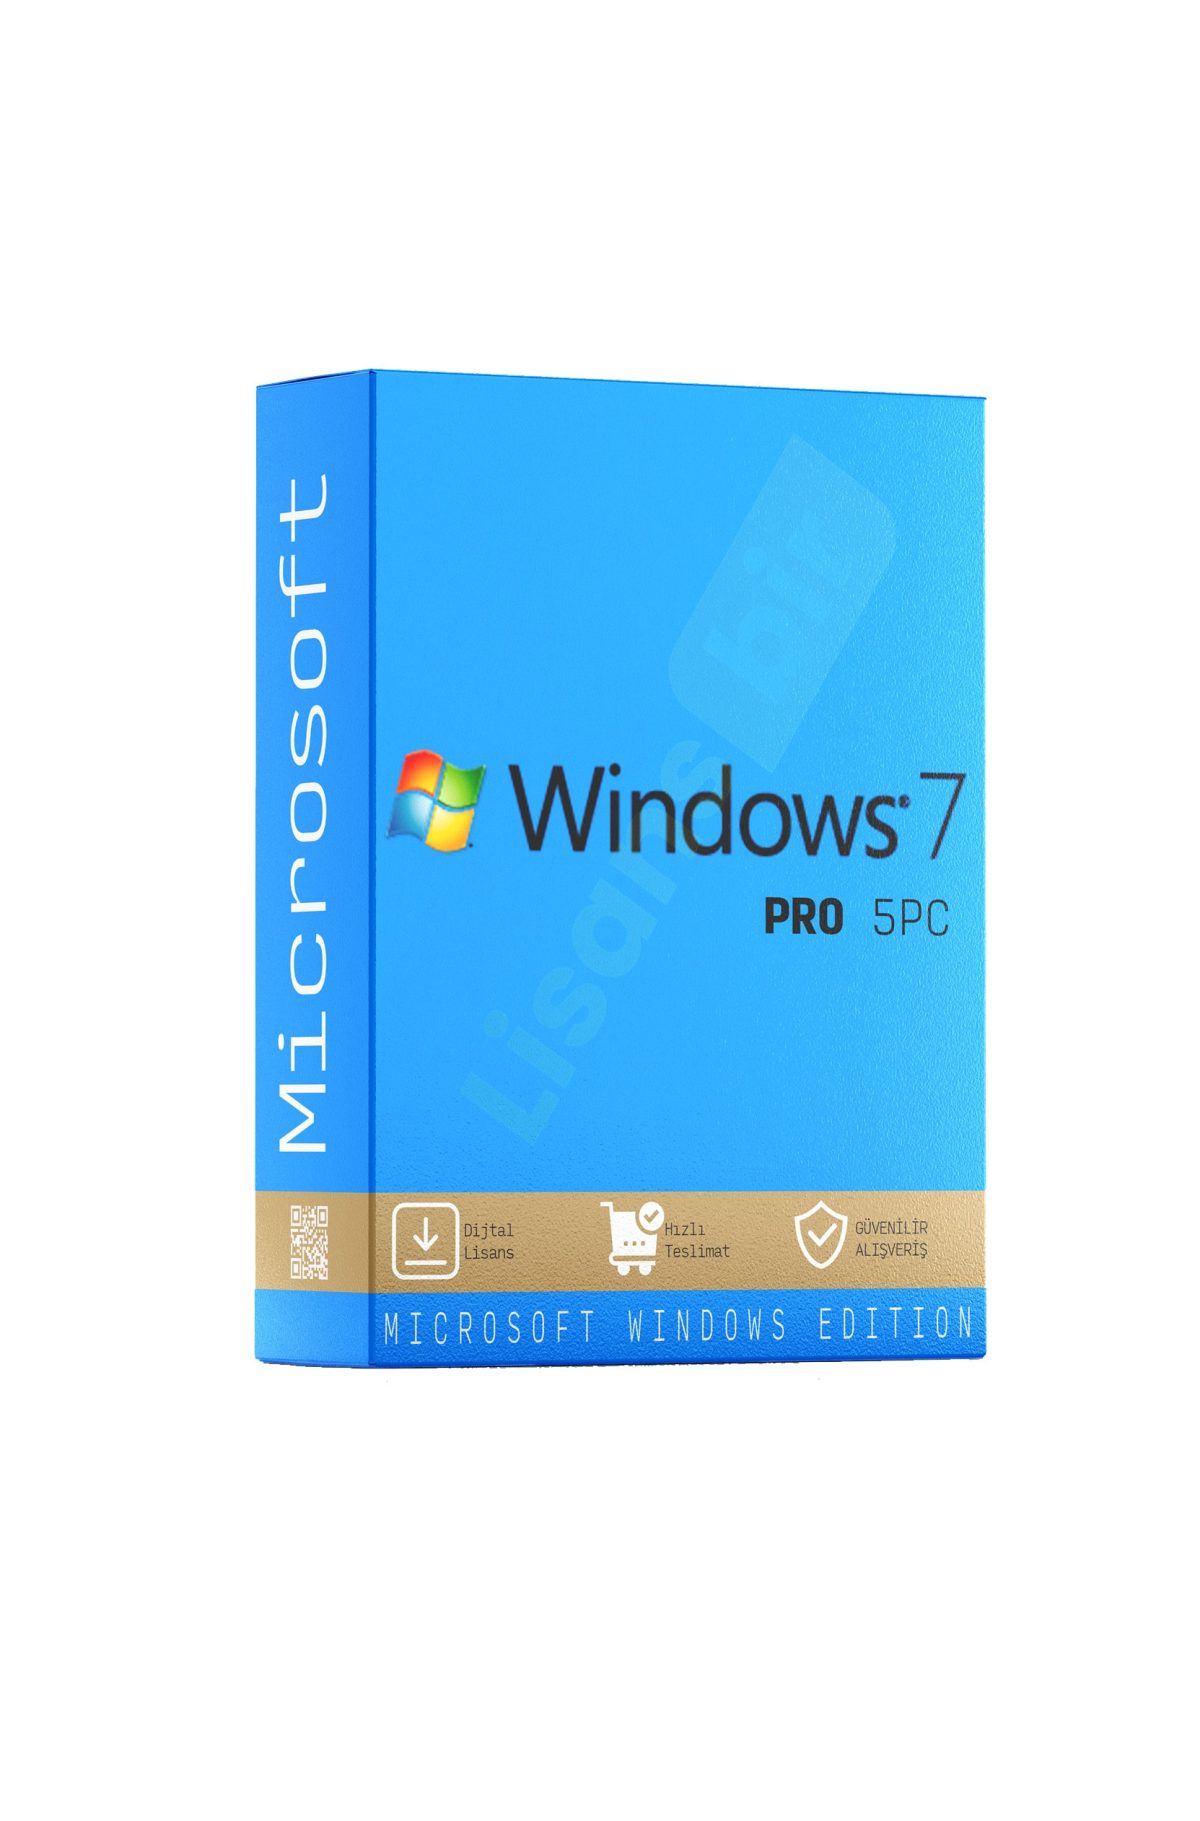 Windows 7 Professional 5PC özellikleri ve çekici yönleri hakkında daha fazla bilgi için Lisansbir ürün sayfasını ziyaret edebilirsiniz.